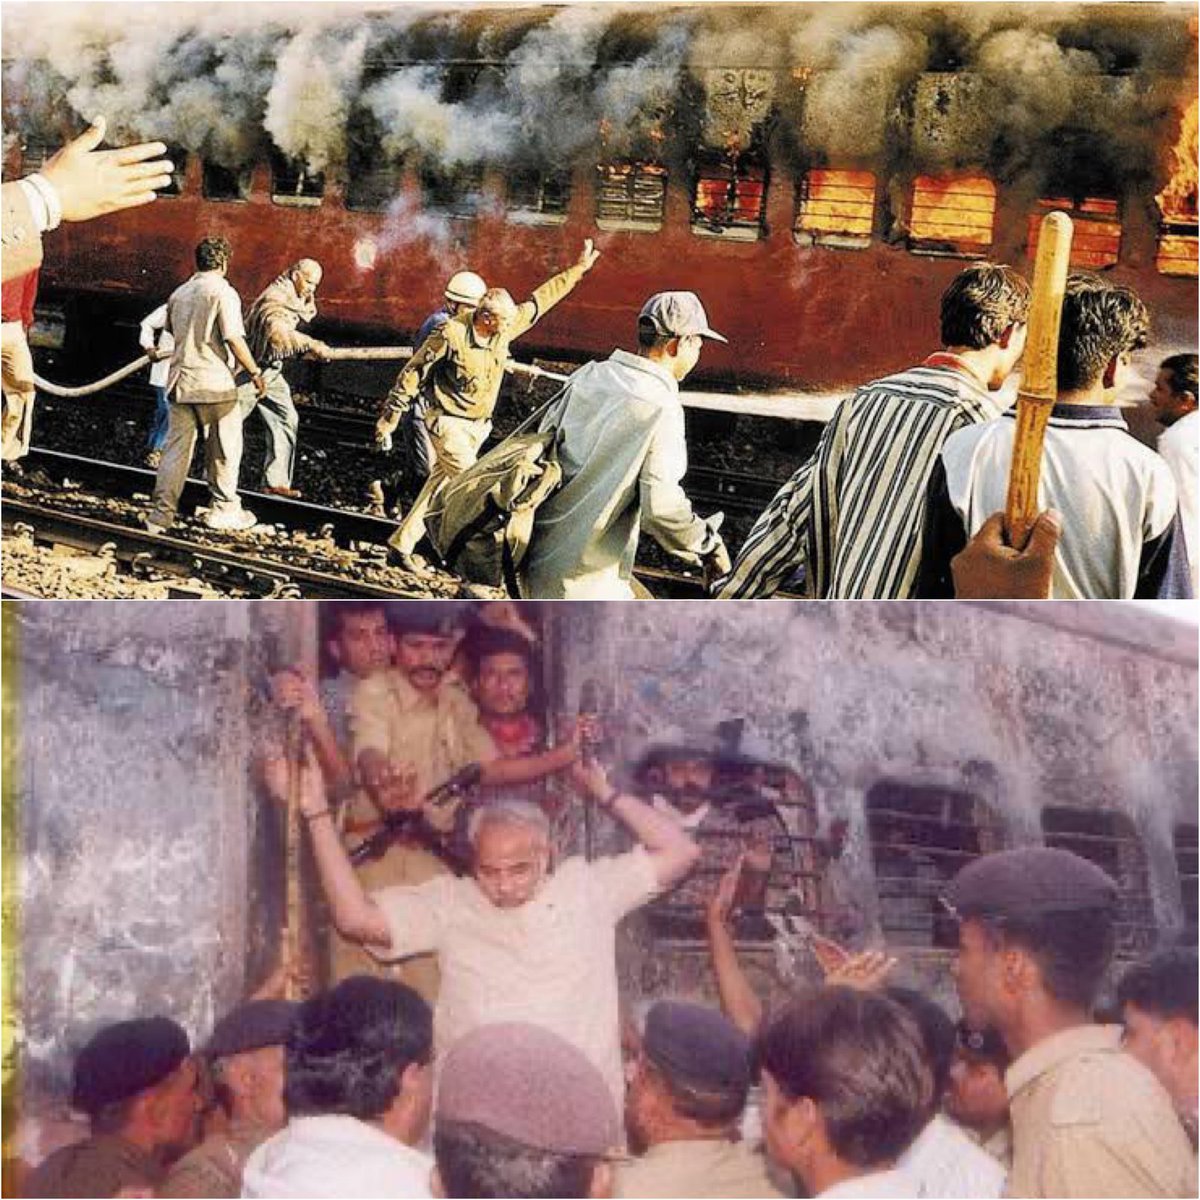 कैसे छोड़ दूँ मोदी जी का साथ जब गोधरा ट्रेन में 59 रामभक्तो को जिंदा जलाया गया था । तब सिर्फ़ मोदी जी ही देखने गये थे और साथ खडे थे। ये दिन हम न भूले है न भूलने देंगे.. कारसेवकों को अश्रुभिनि श्रद्धांजलि !